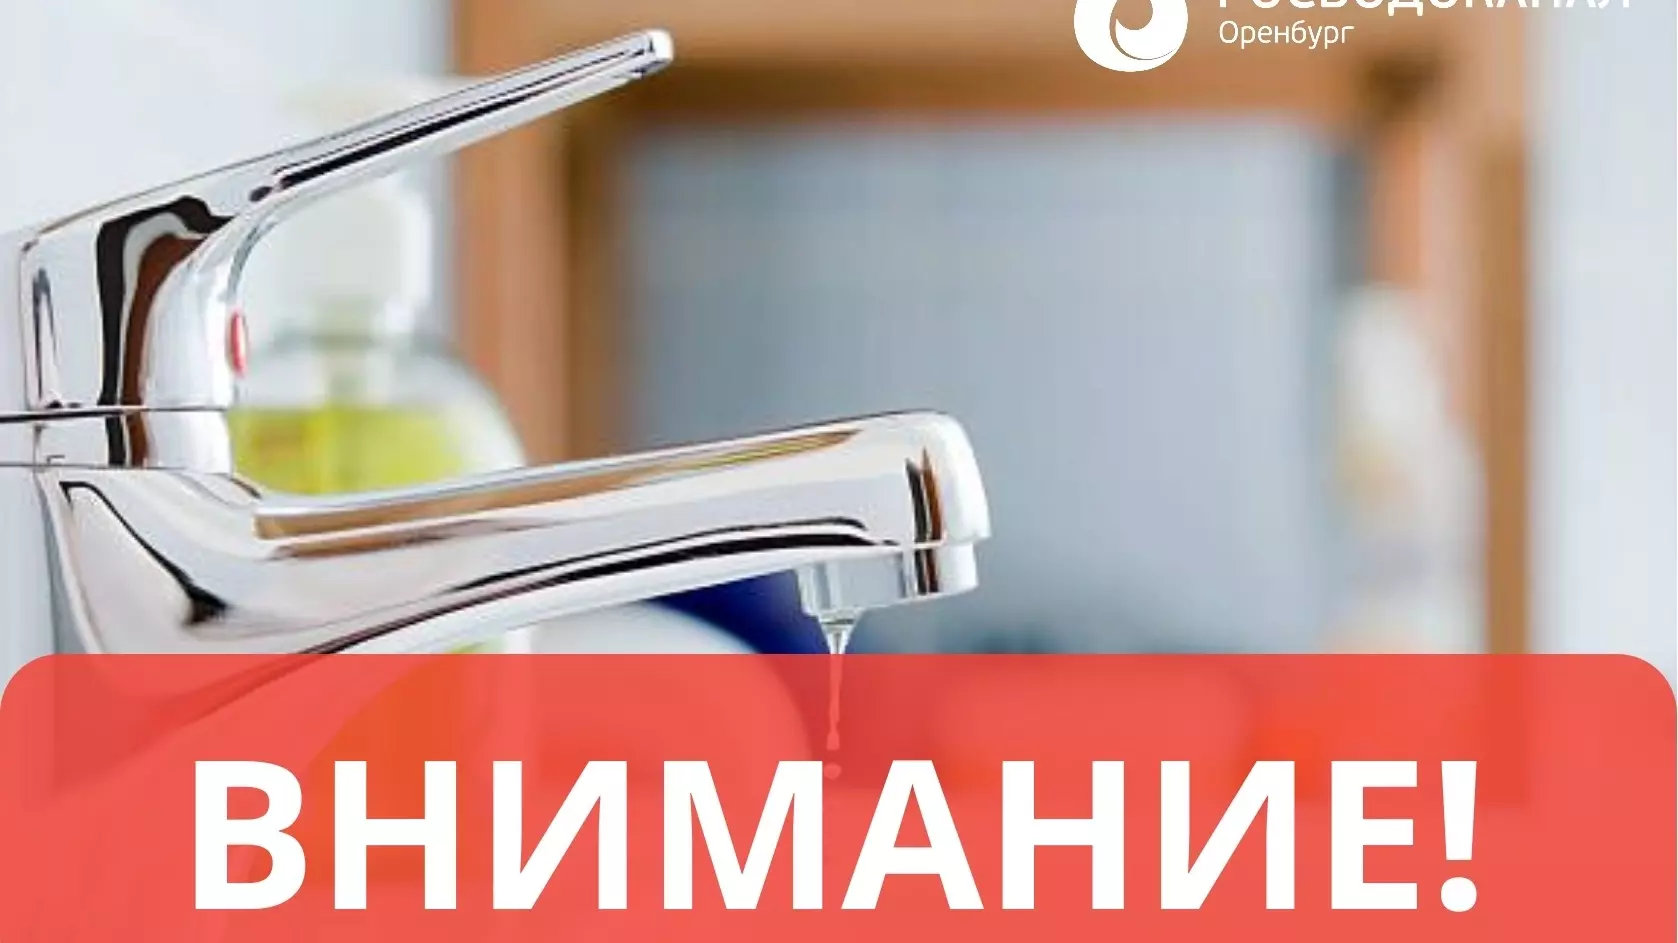 Росводоканал Оренбург информирует о сроках запуска водозабора Экодолья